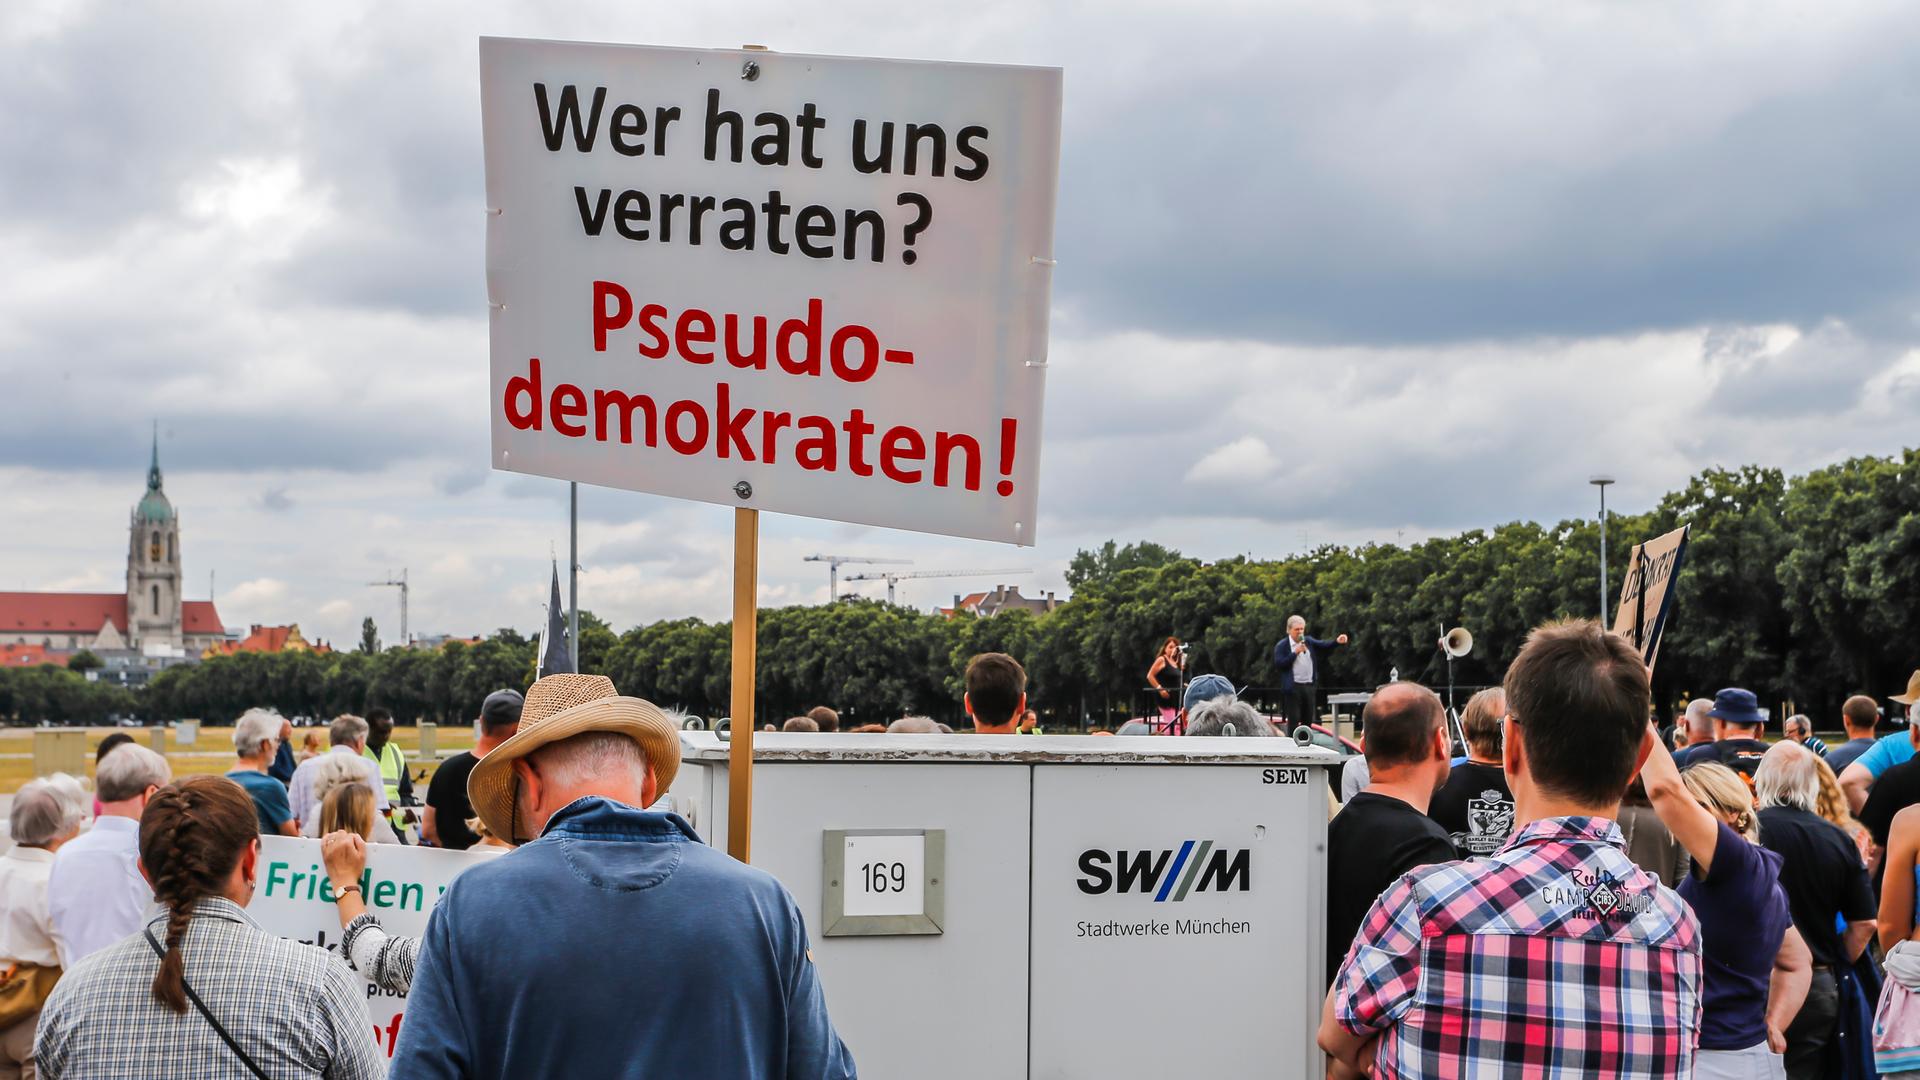 Zu sehen sind mehrere Teilnehmer einer Demonstration gegen das Heizungsgesetz, einer von ihnen hält ein Plakat mit der Aufschrift "Wer hat uns verraten? - Pseudodemokraten!" in die Höhe. 